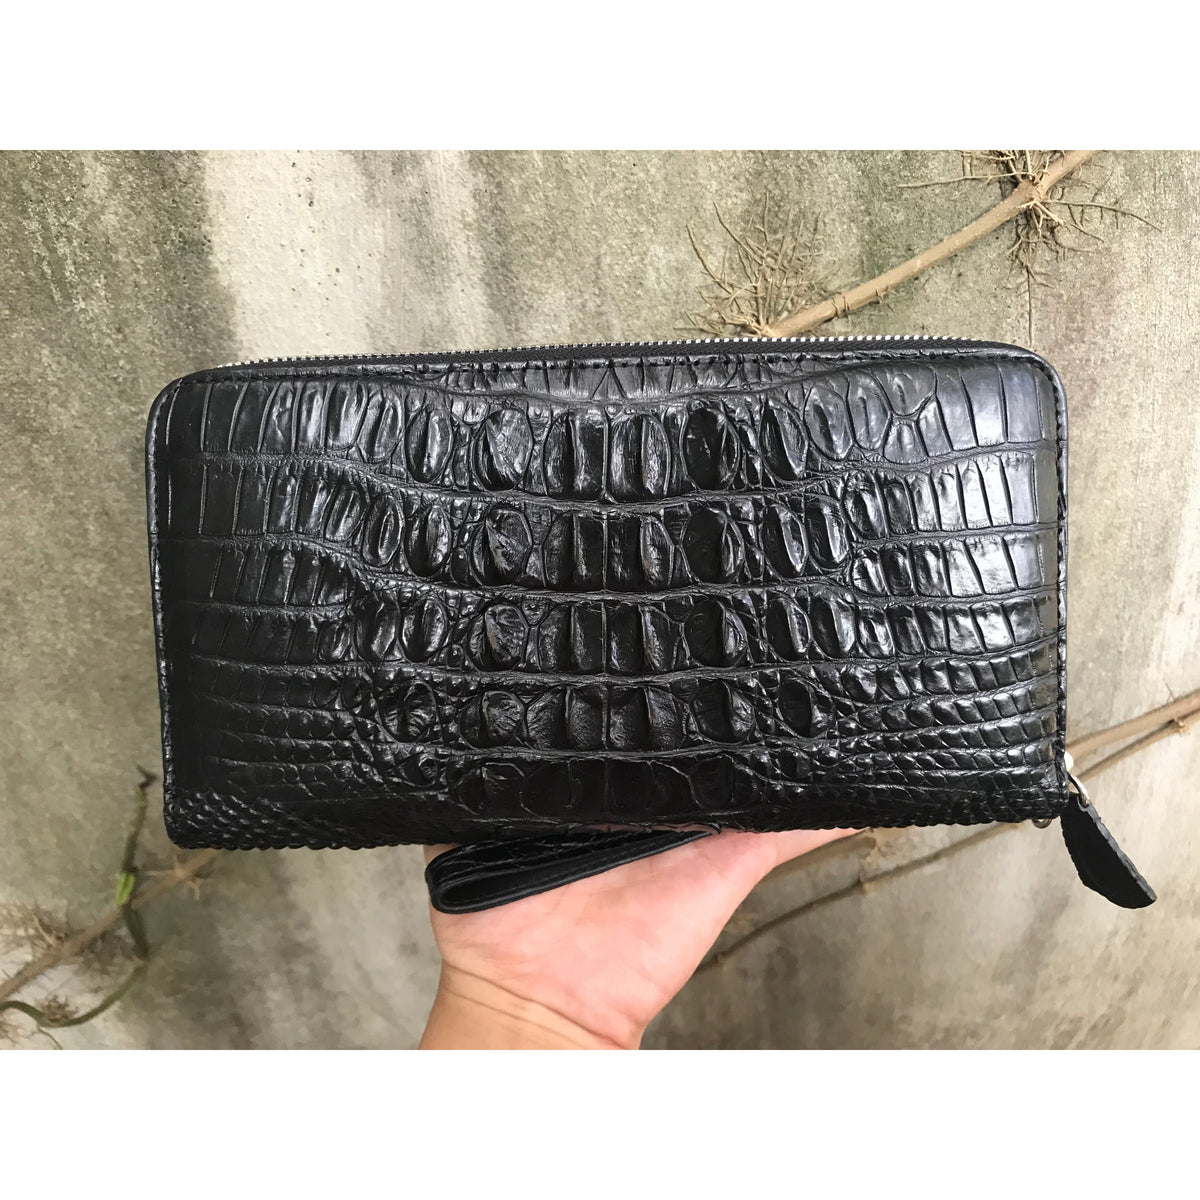 Designer Alligator Leather Large Wallet With Strap Wristlet Clutch